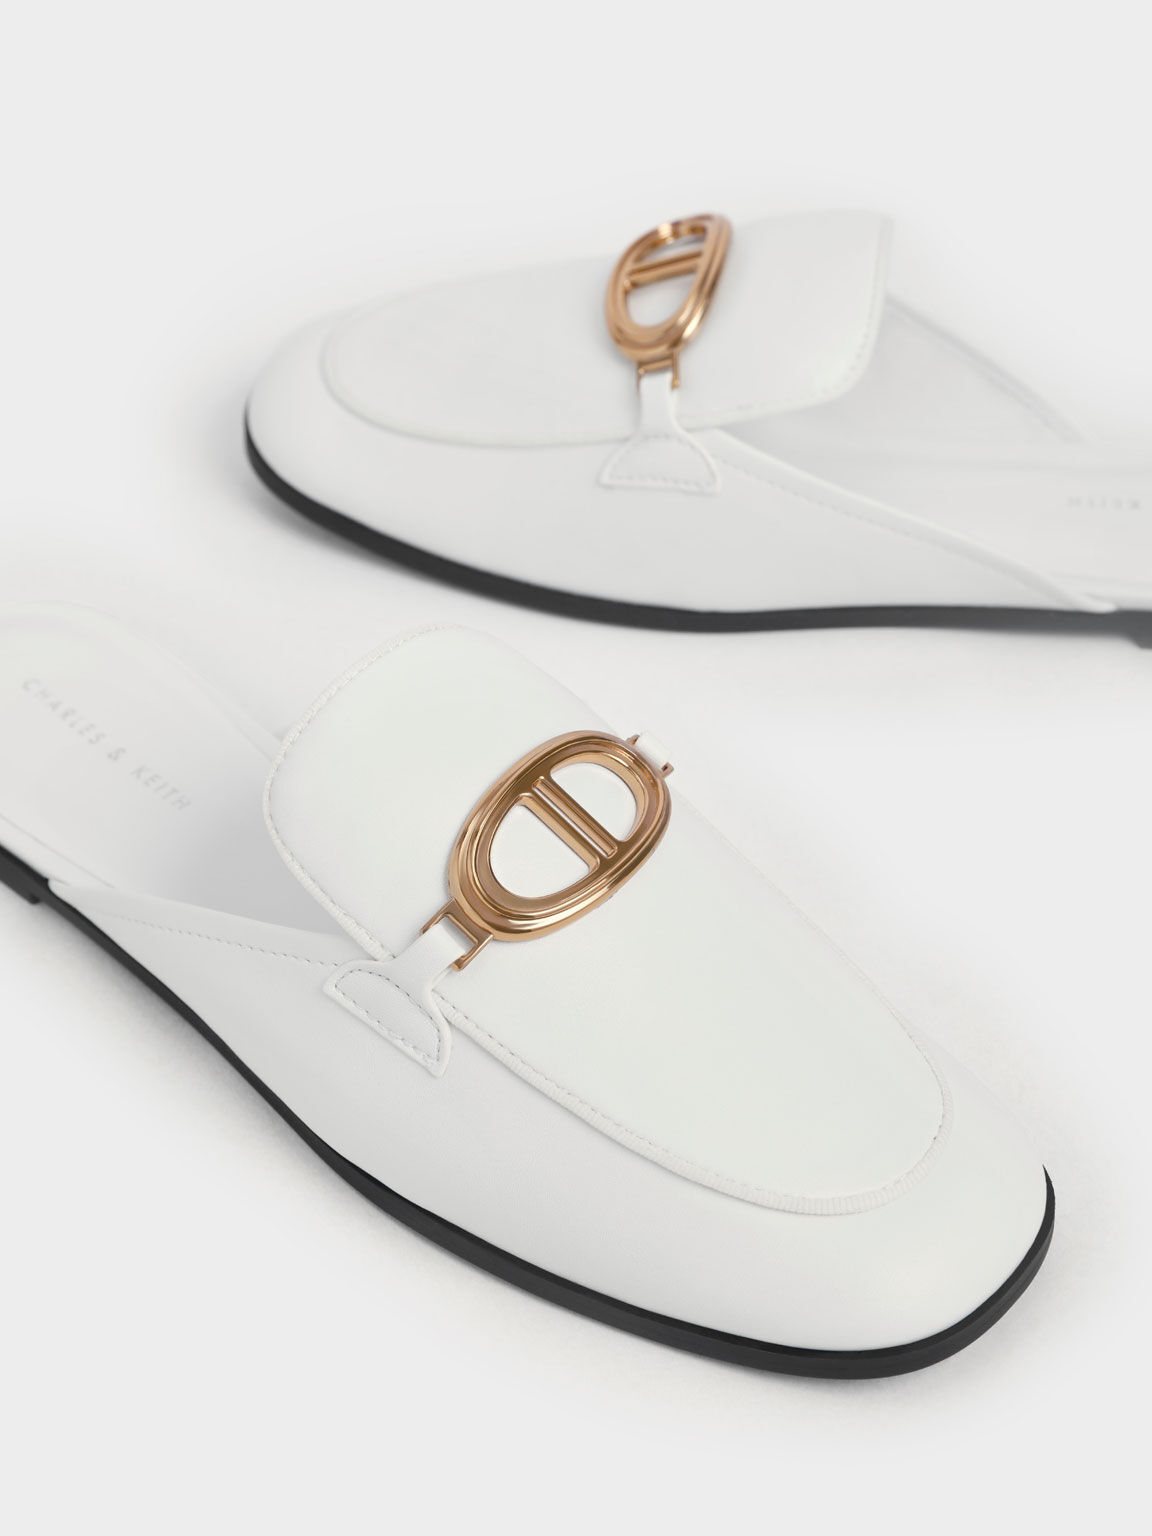 Sepatu Loafer Mules Metallic Accent, White, hi-res